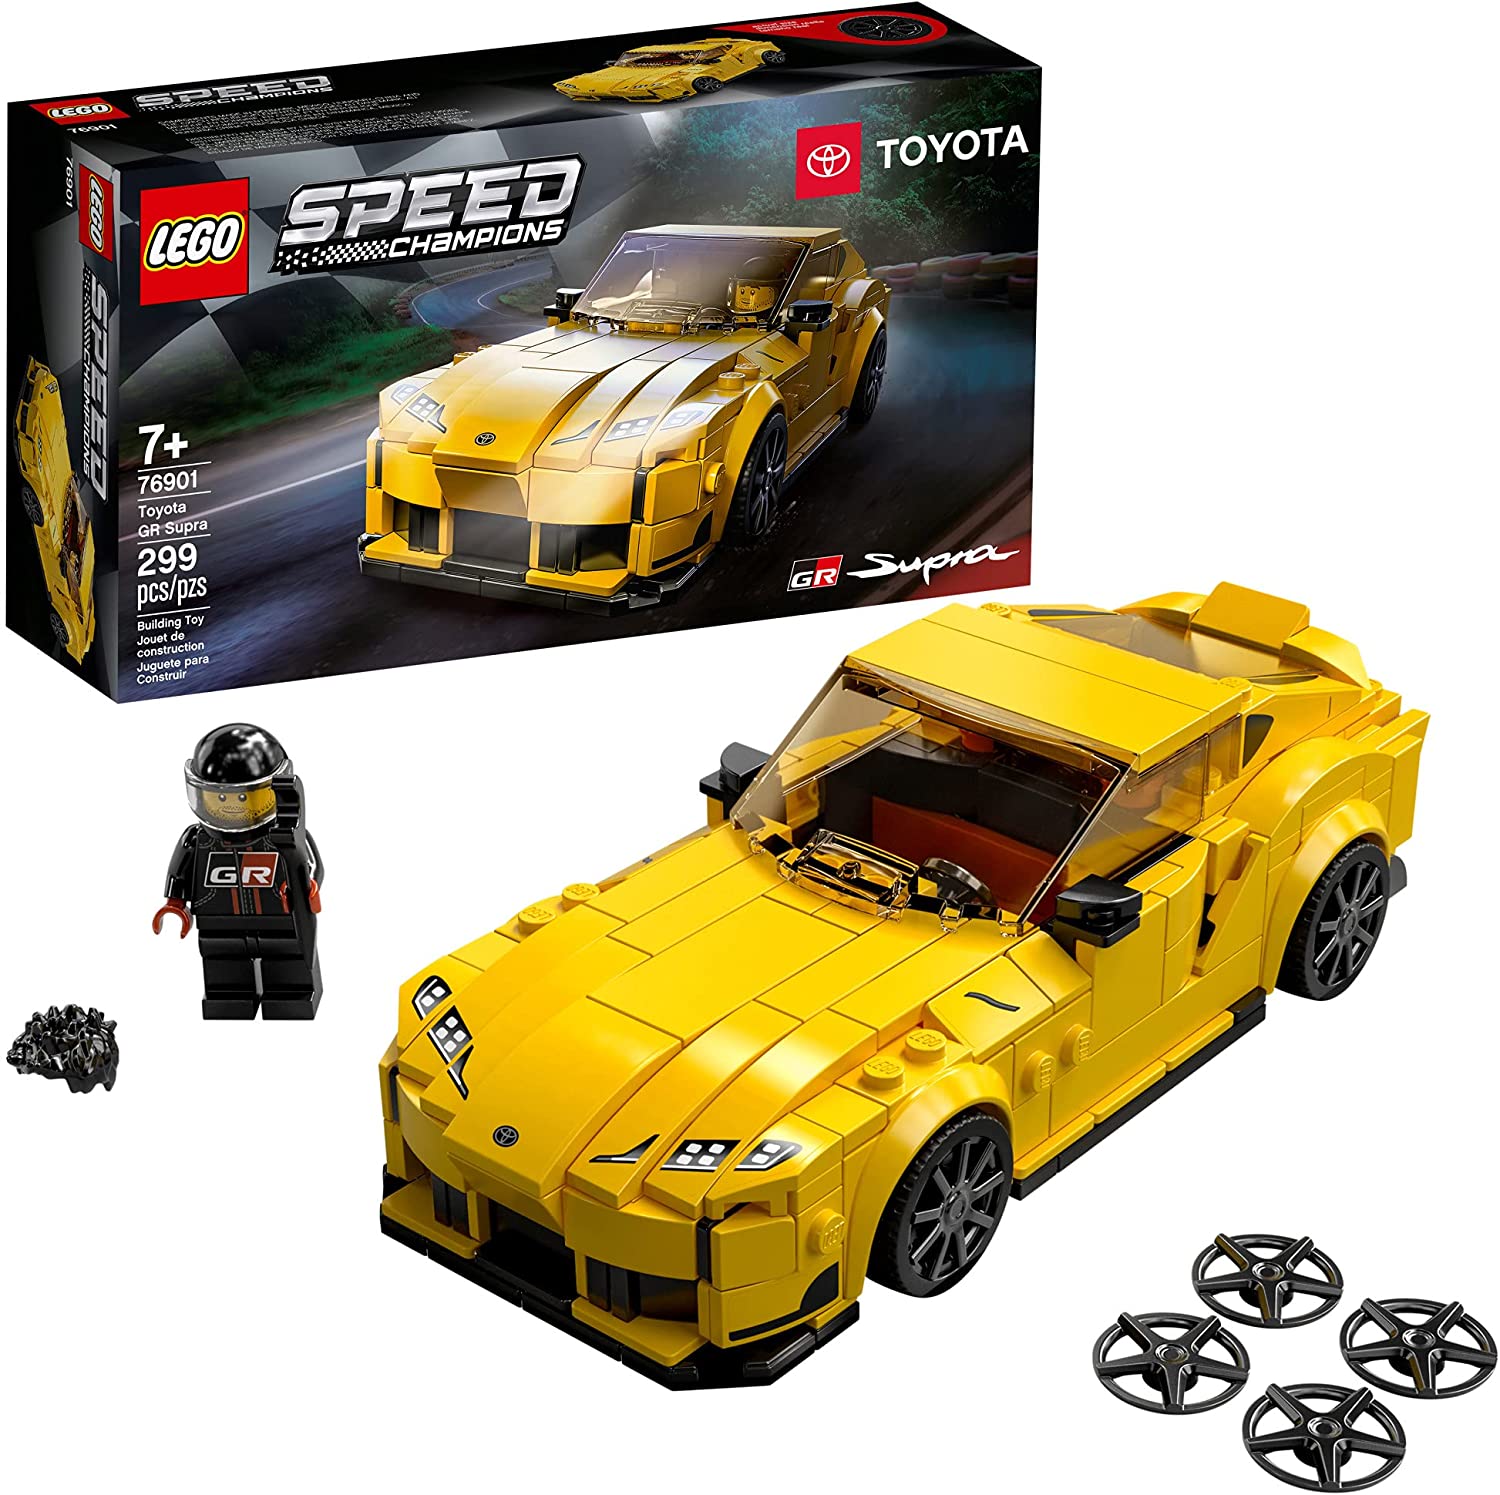 Đồ Chơi LEGO Speed Champions Siêu Xe Toyota Gr Supra 76901 Cho Bé Trên 7 Tuổi (299 mãnh)